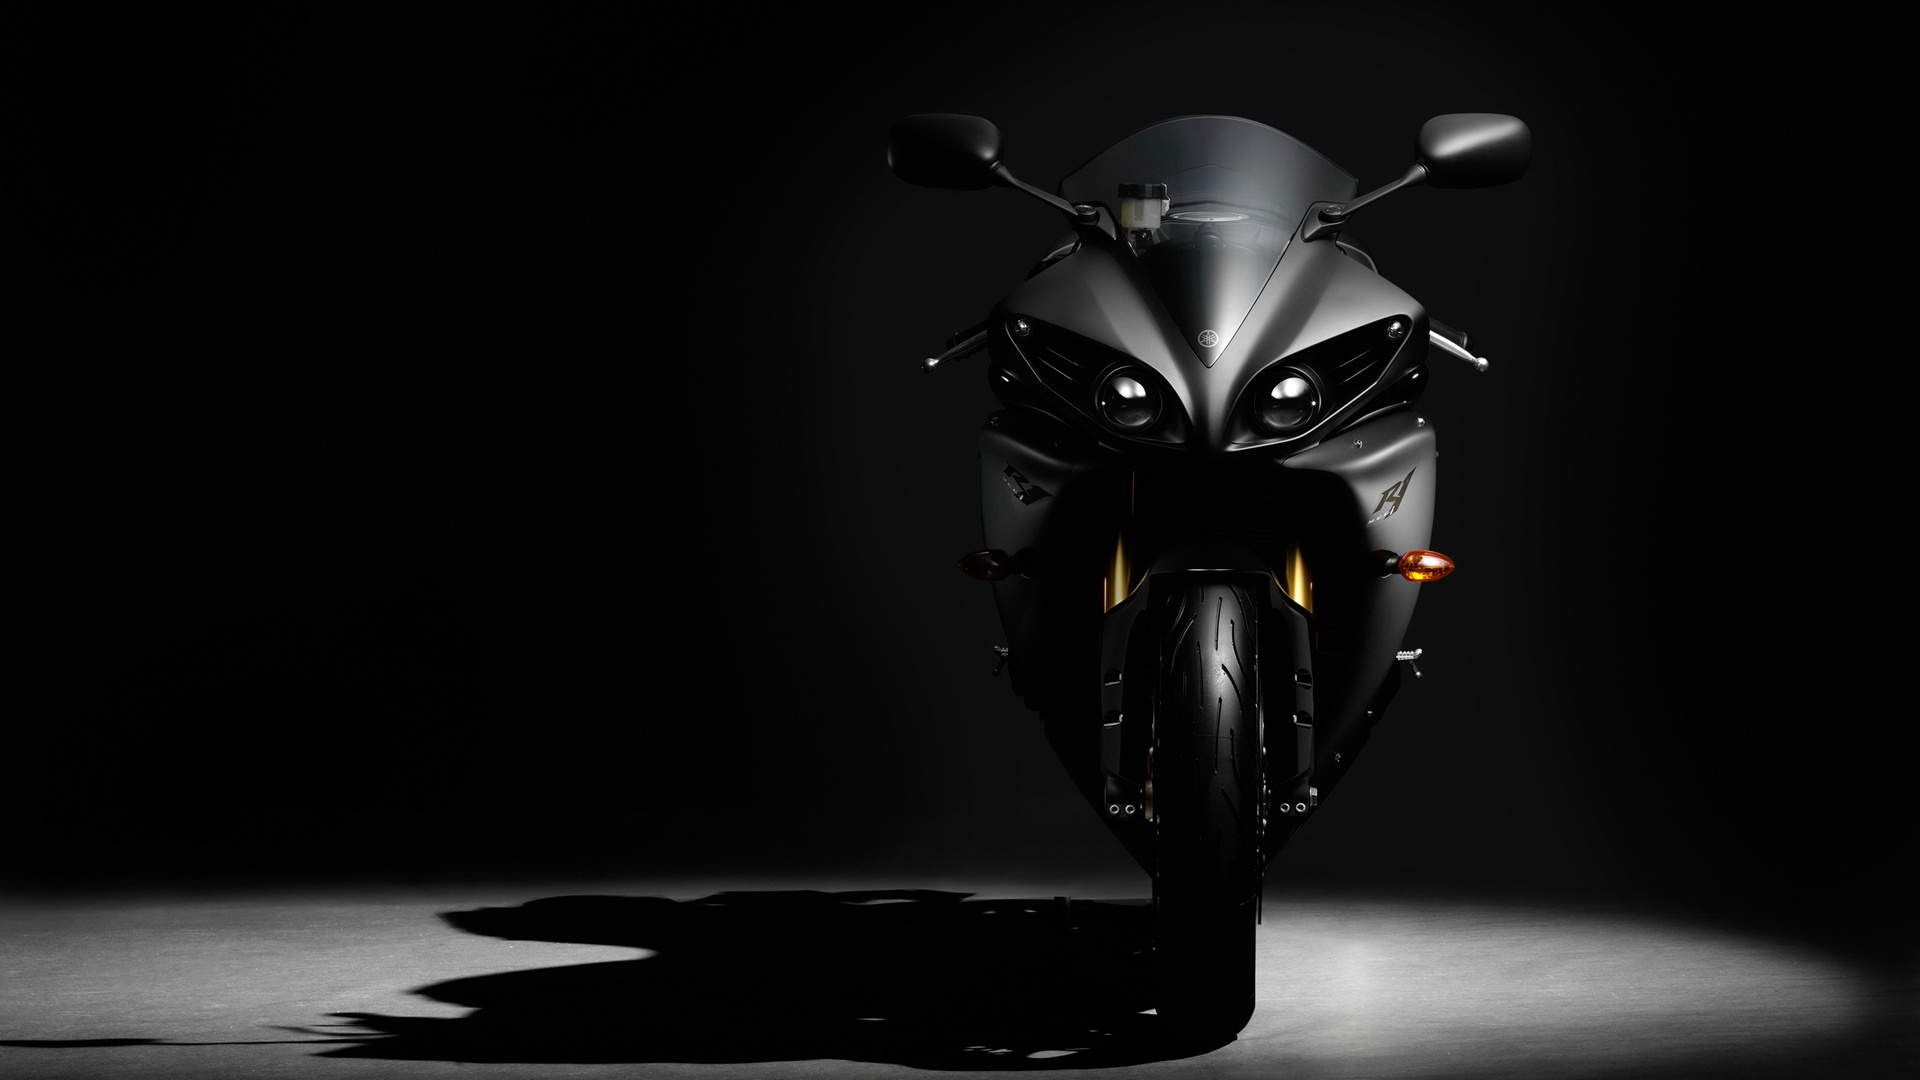 R1 Black Shadow HD Wallpaper Bikes Motorcycles Yamaha